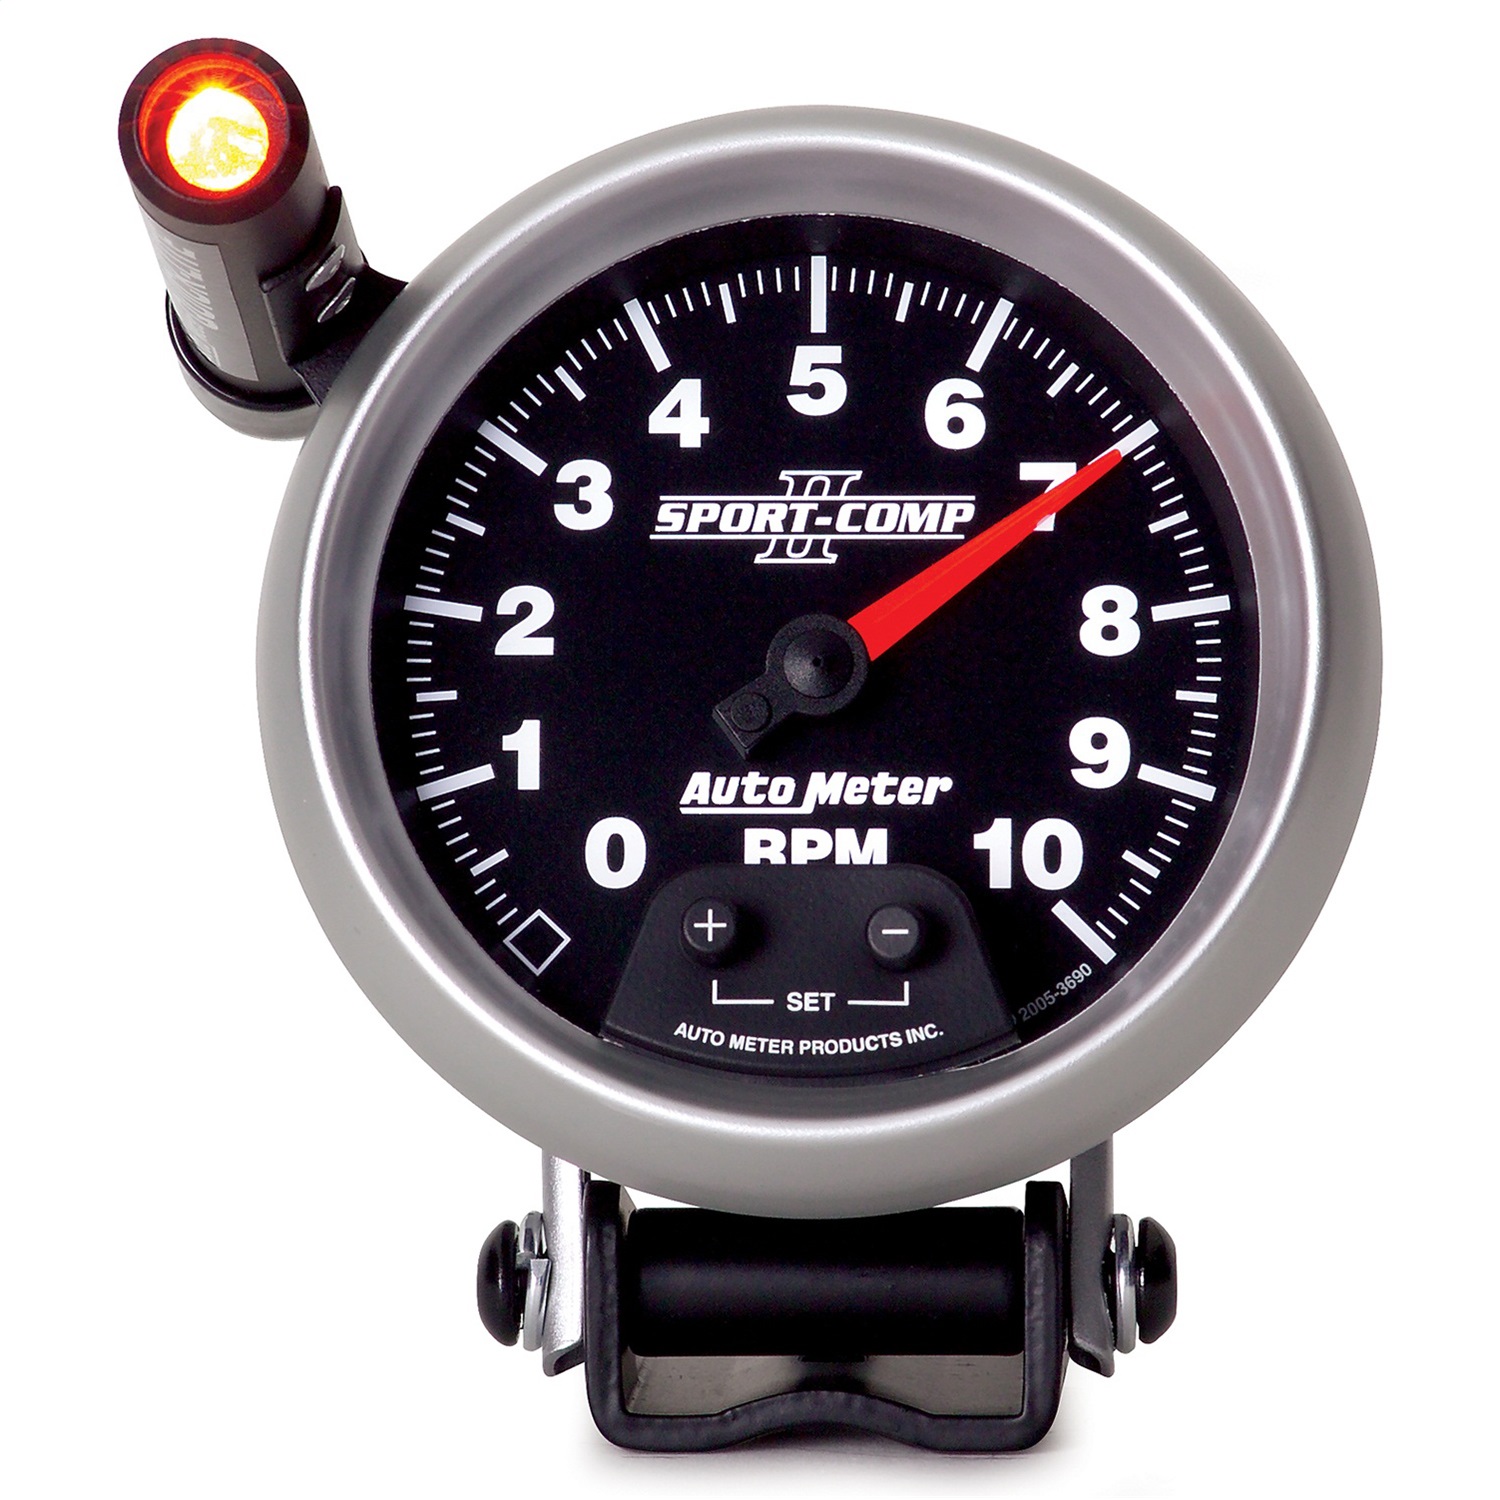 Auto Meter Auto Meter 3690 Sport-Comp II; Tachometer